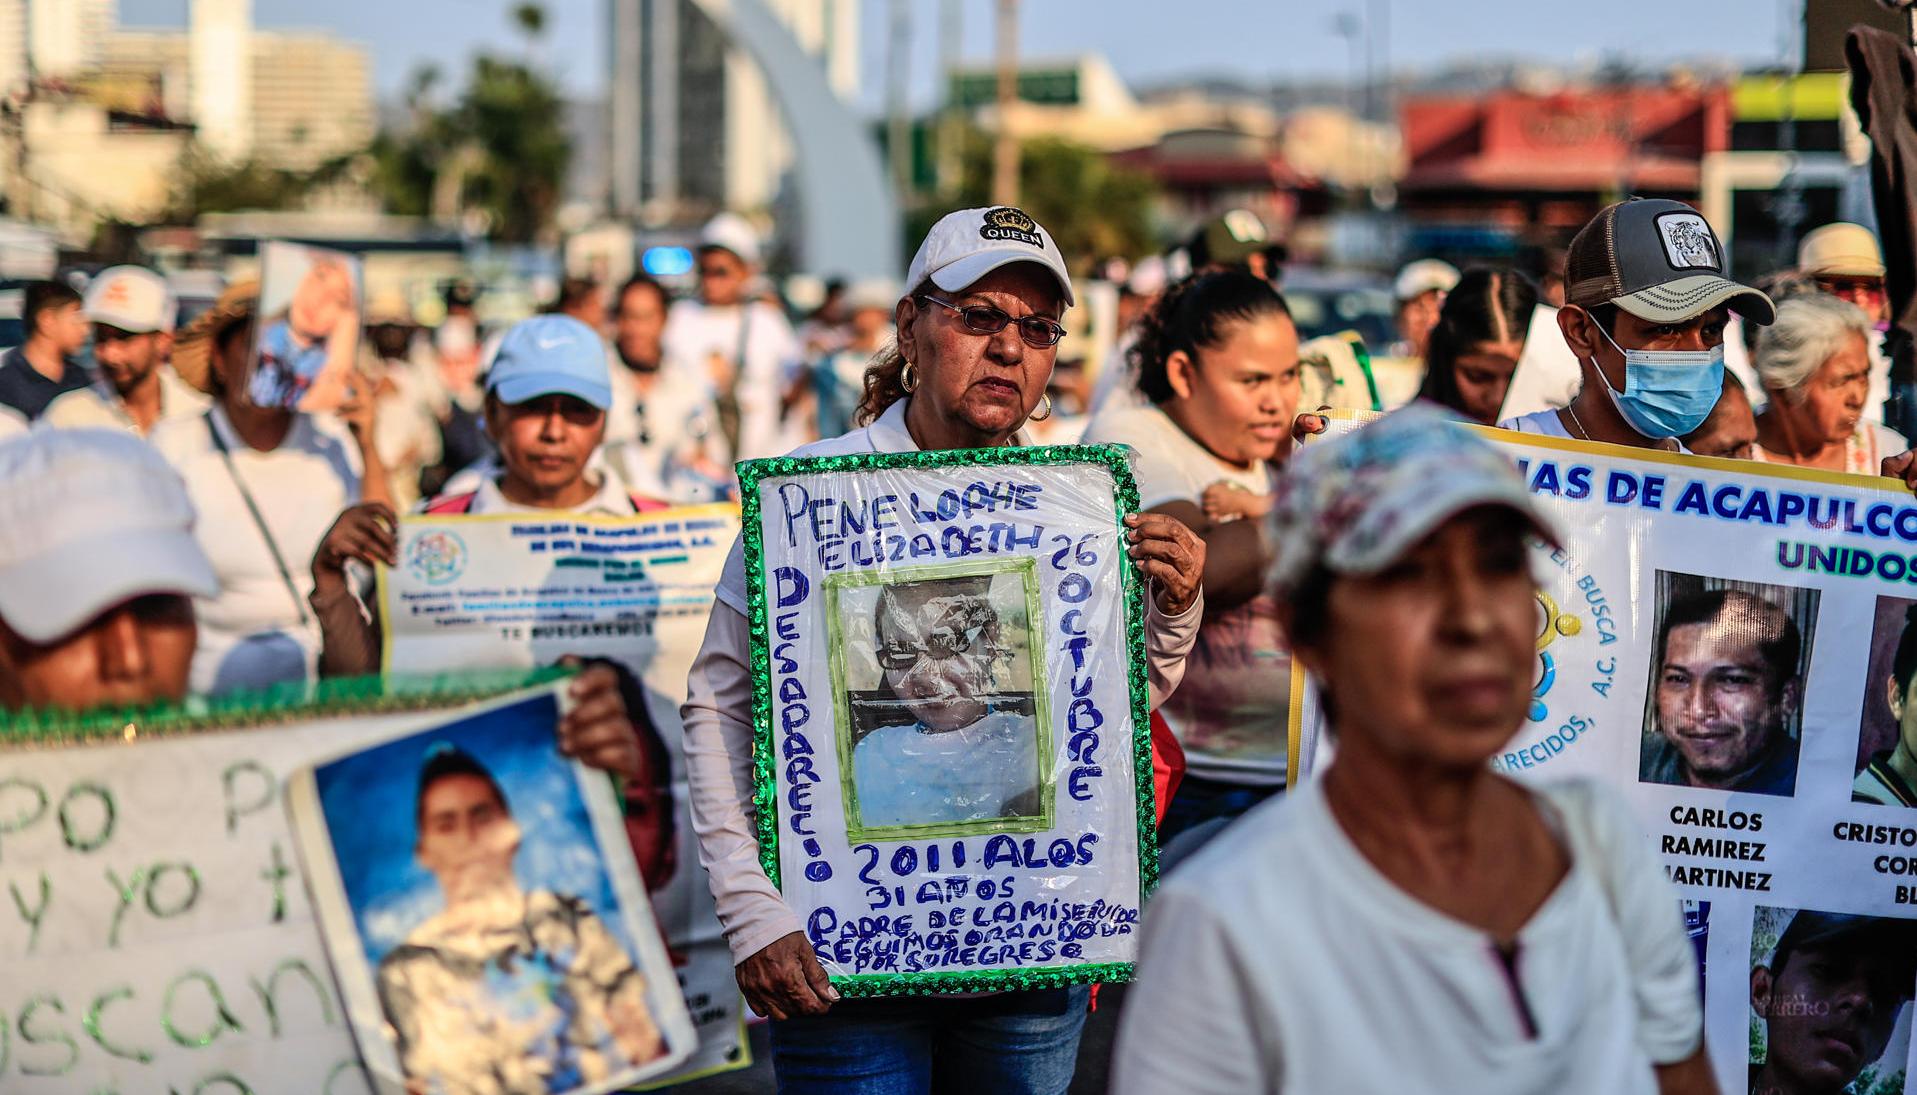  Madres de hijos desaparecidos y diversos colectivos marcharon en el Balneario de Acapulco, México